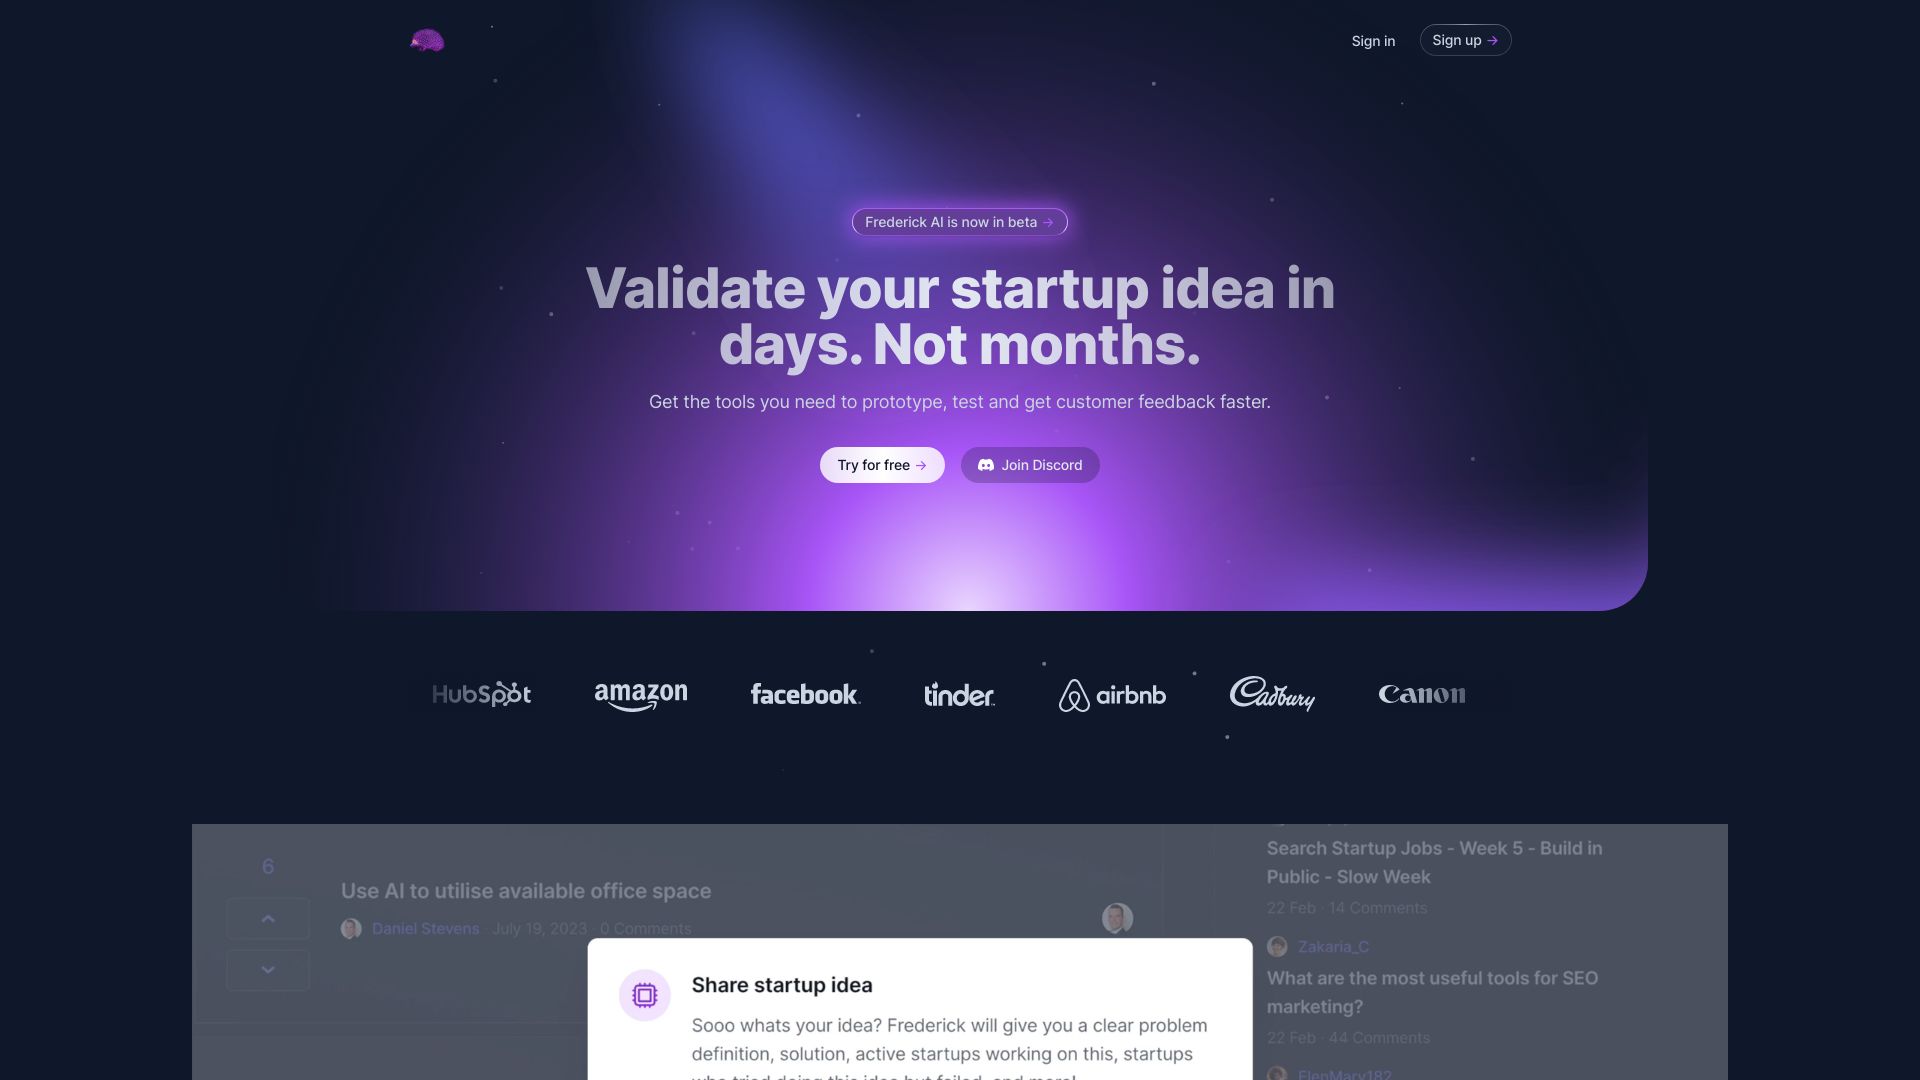  Startup Image